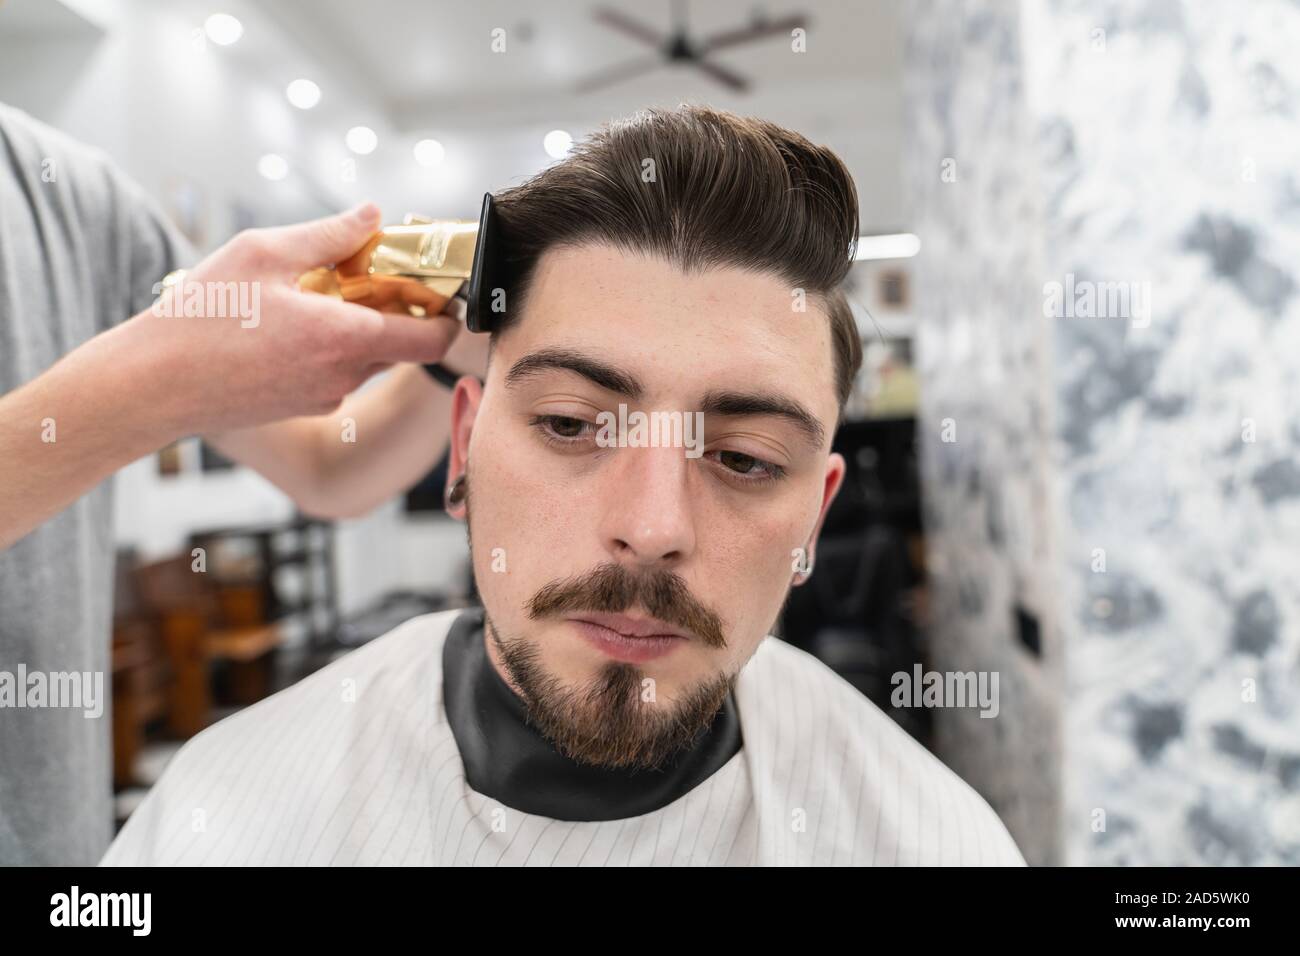 Manner Haarschnitt Und Styling Herren Kosmetik Und Haarpflege Stockfotografie Alamy